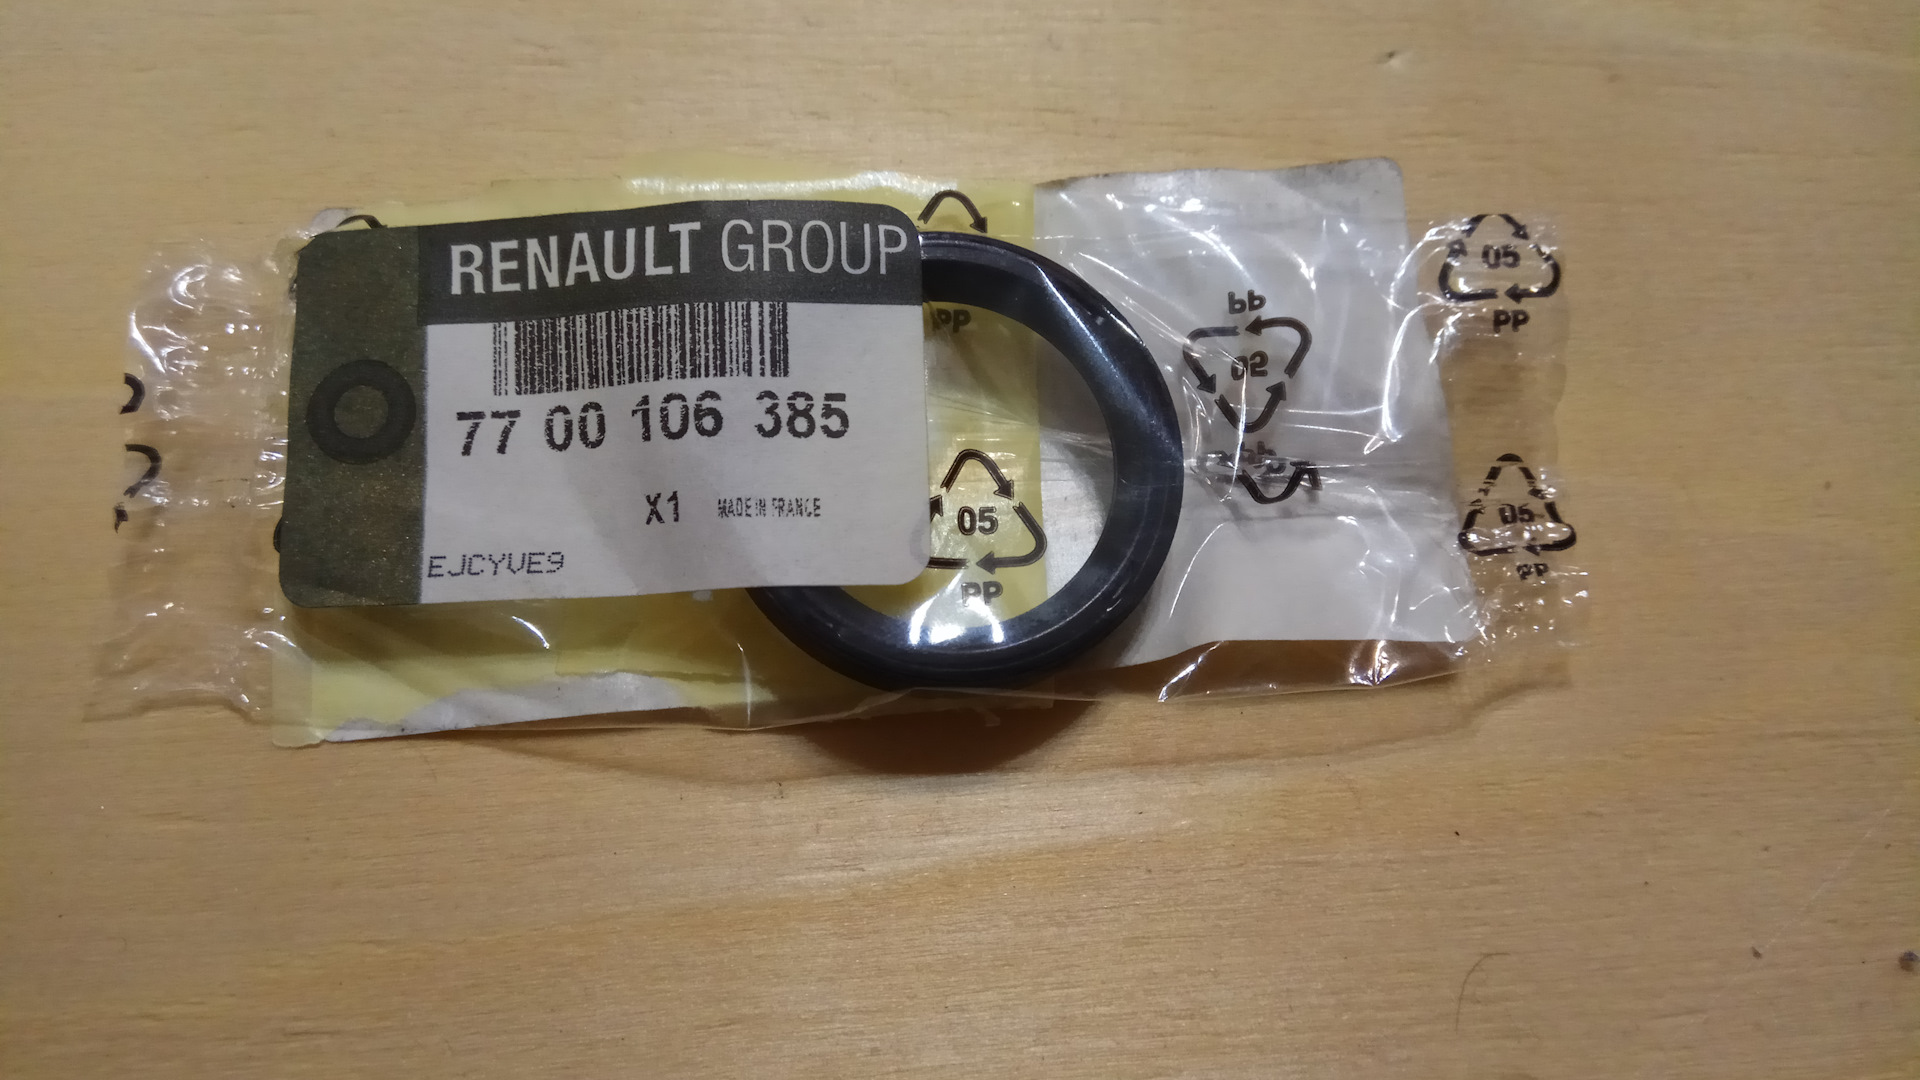 Кольца рено дастер 2.0. Уплотнительное кольцо фазорегулятора Renault 7700106385. Уплотнительное кольцо катушки Рено Дастер 1.6 артикул. Уплотнительное кольцо Рено Дастер 2.0. Уплотнительное кольцо катушки зажигания Рено.